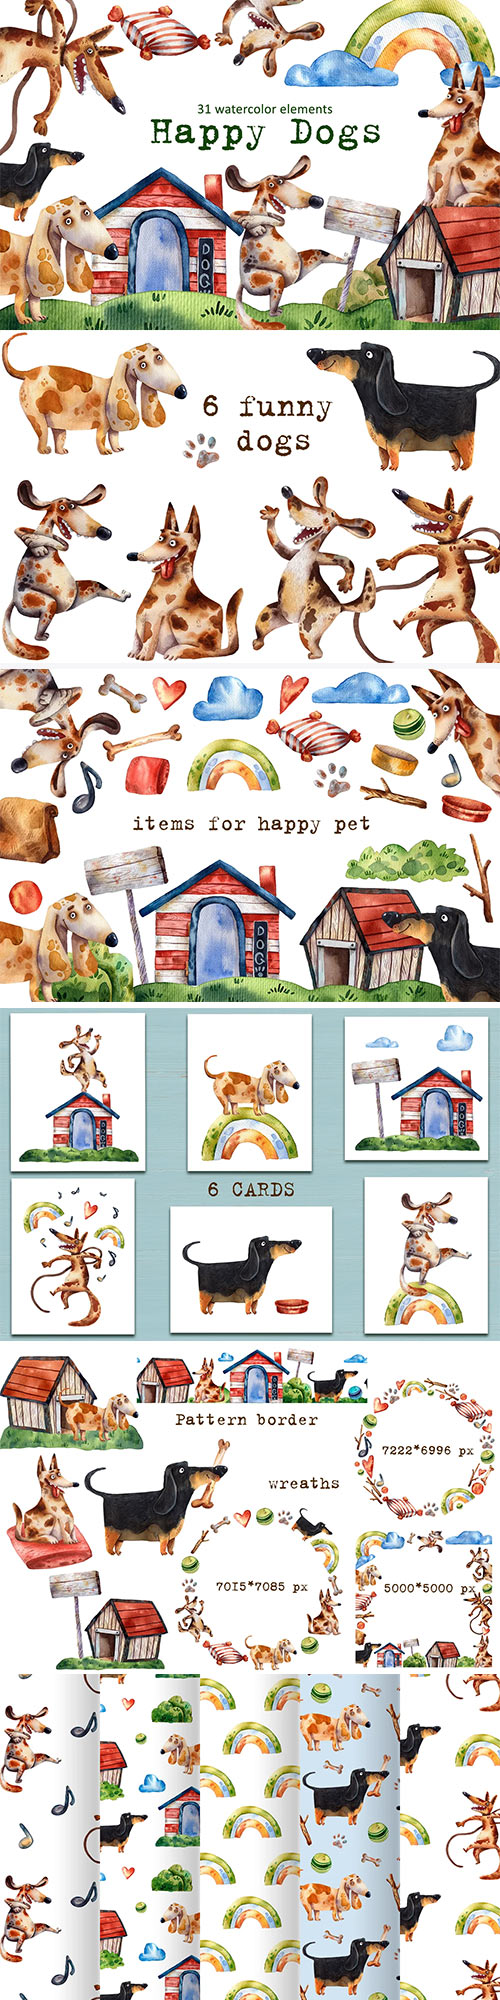 Happy Dogs - Watercolor Clip Art Set - 5853753